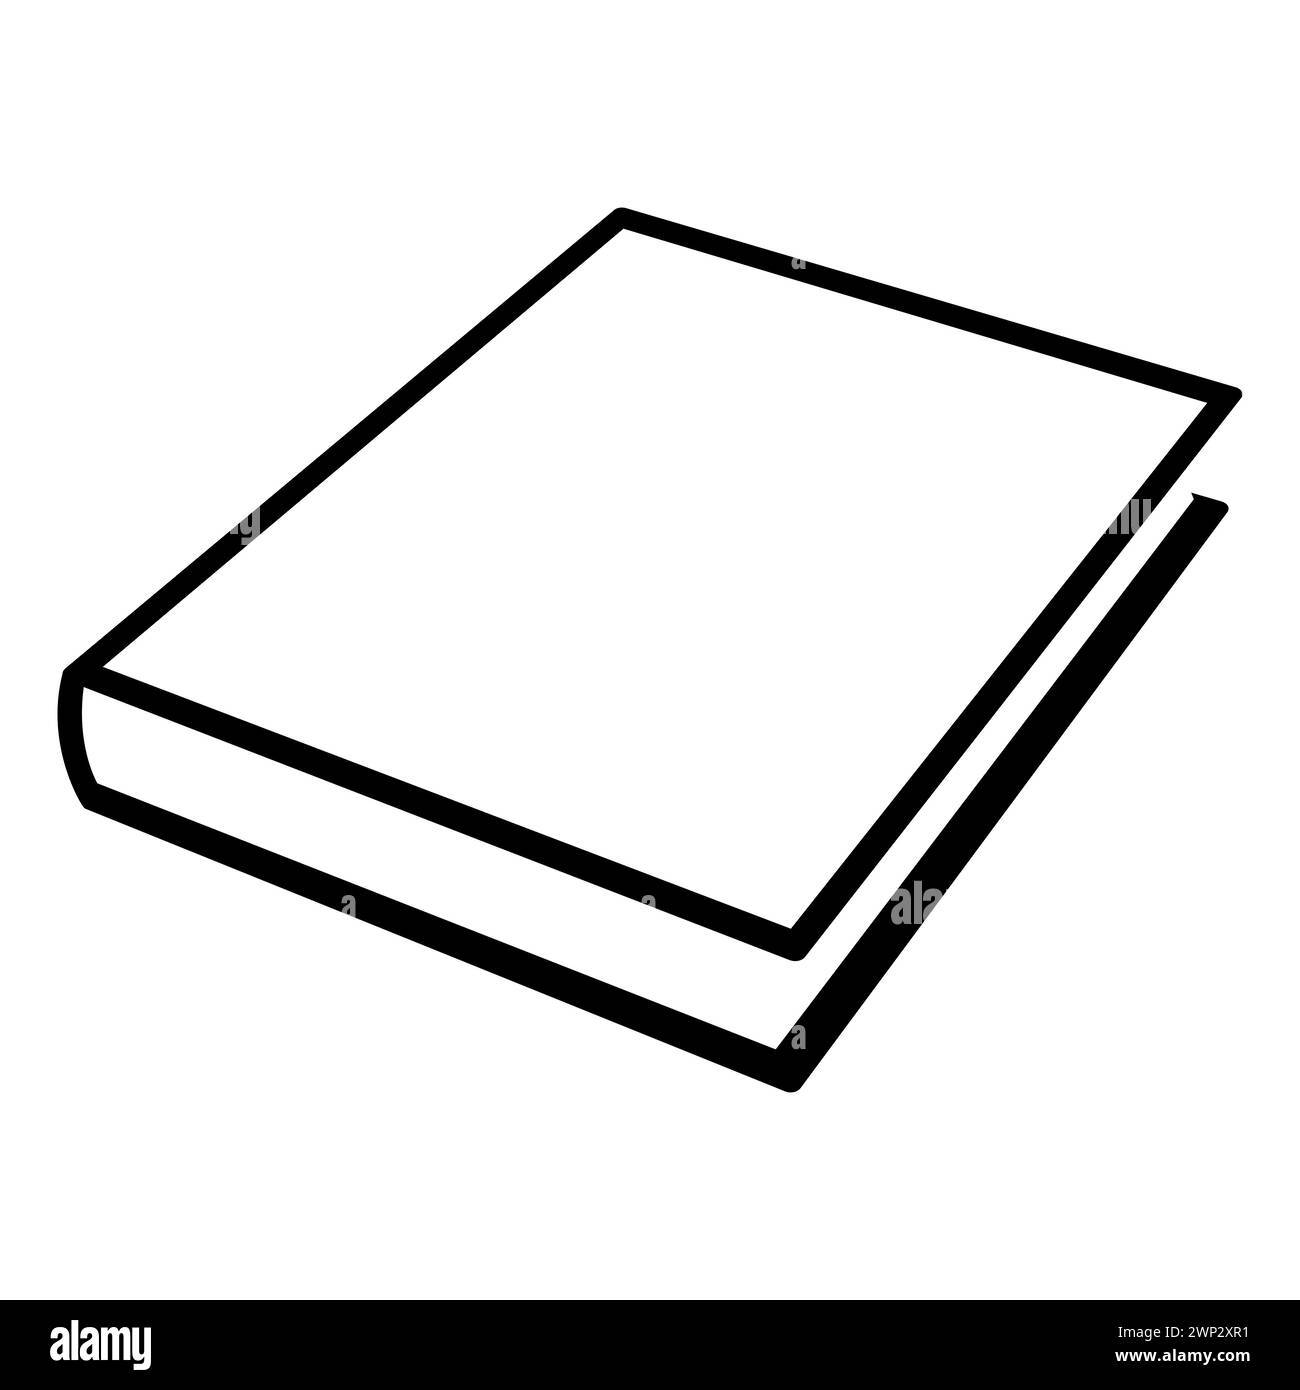 Buch - Schwarzweiß einfaches Symbol eines geschlossenen Buches, Vektordarstellung isoliert auf Weiß Stock Vektor